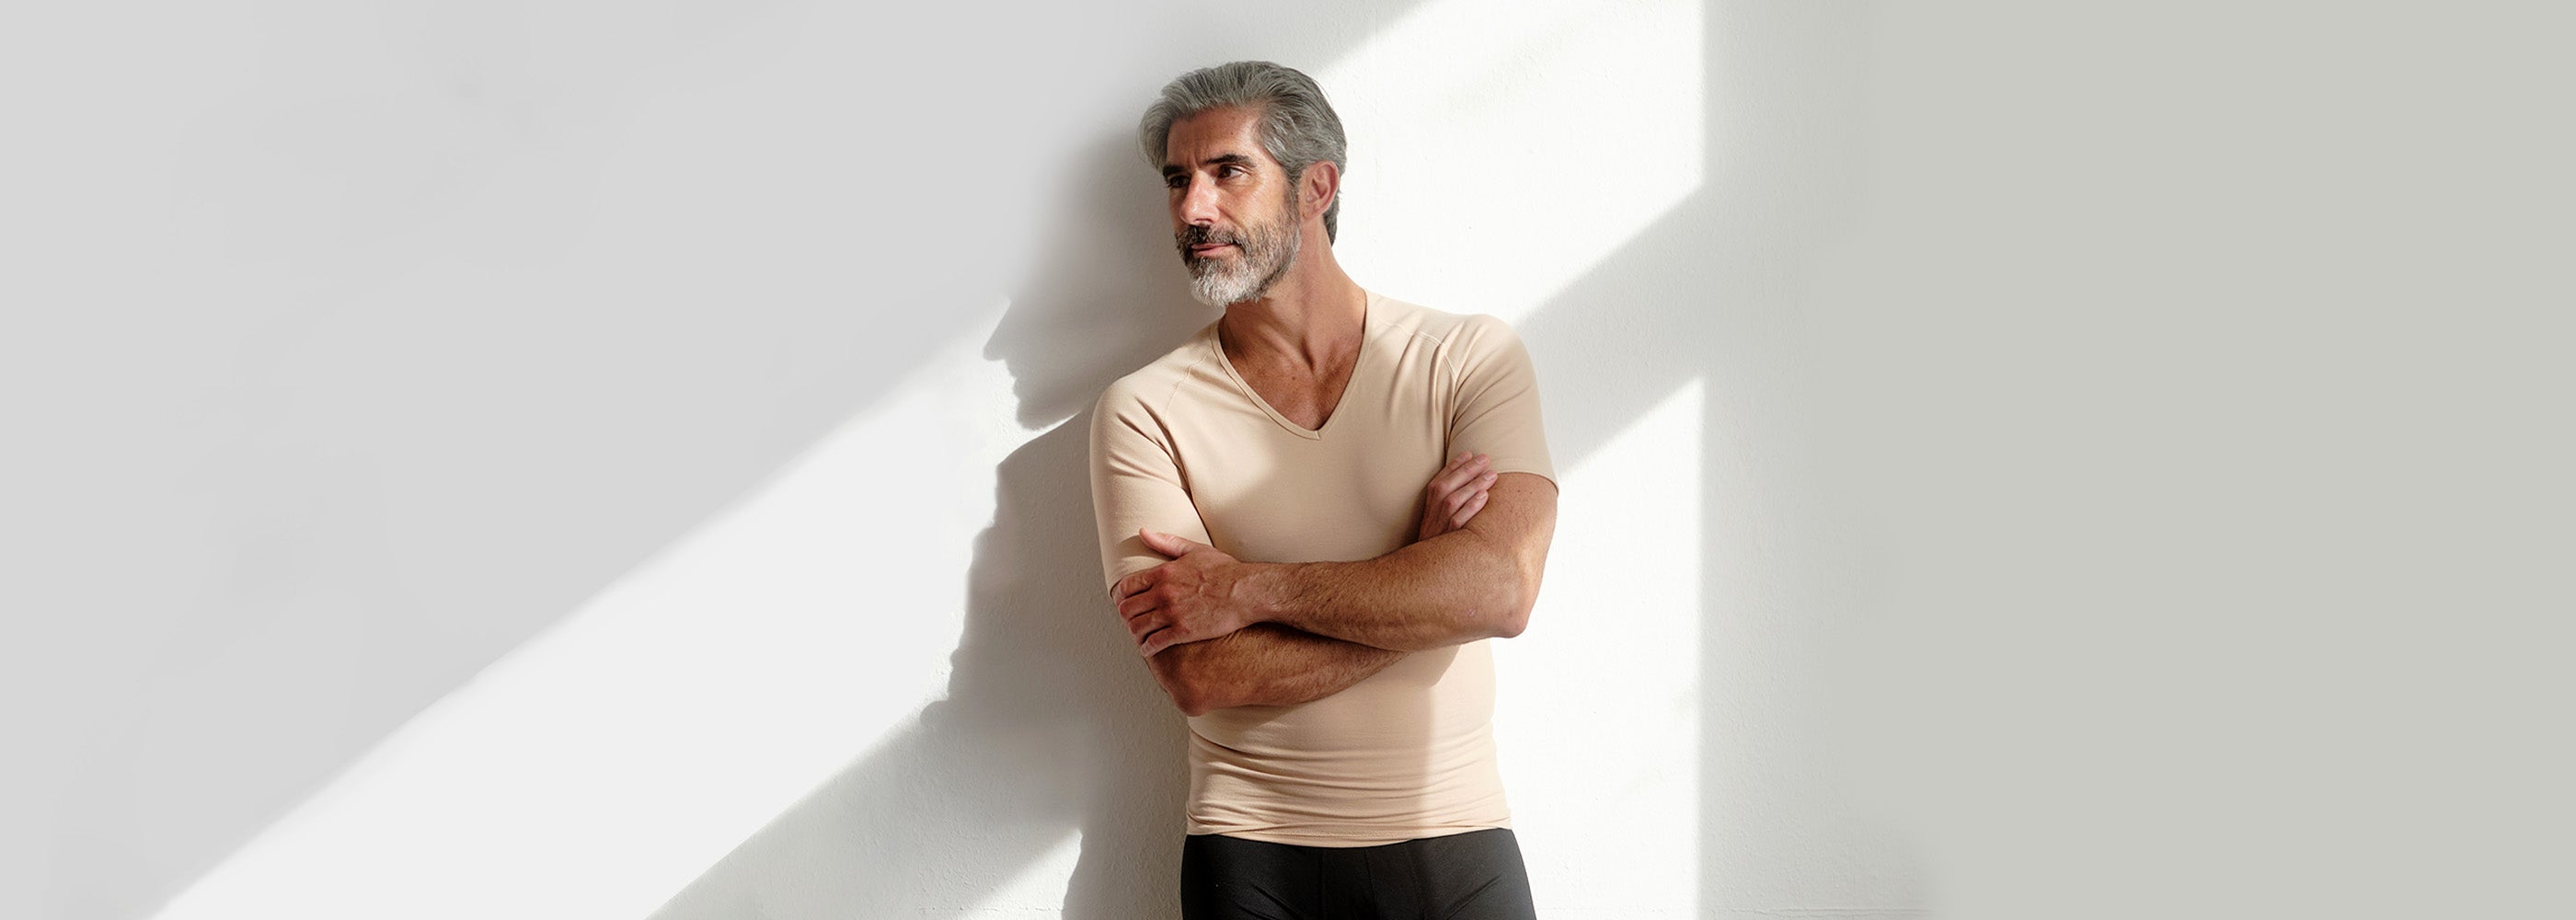 Mann im besten Alter in hautfarbenem Business-Unterhemd mit V-Ausschnitt genießt die Sonneneinstrahlung. Unsere Business-Unterhemden, aus feinstem Modal für ein natürlich weiches Gefühl auf der Haut, bieten Komfort und Stil für den geschäftigen Alltag.